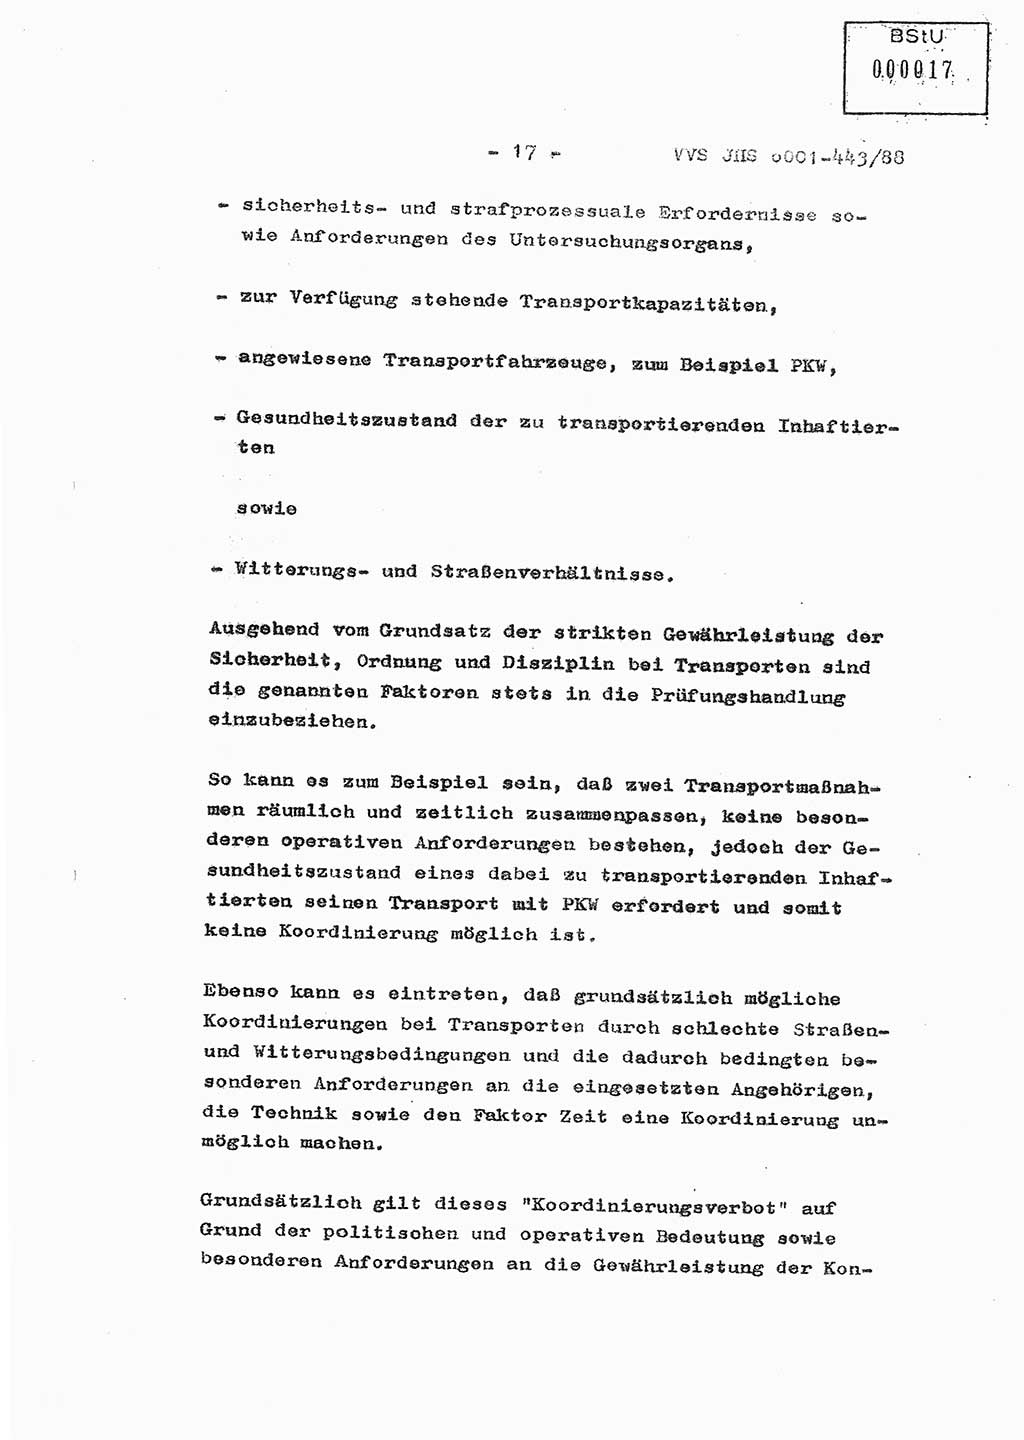 Diplomarbeit Hauptmann Michael Rast (Abt. ⅩⅣ), Major Bernd Rahaus (Abt. ⅩⅣ), Ministerium für Staatssicherheit (MfS) [Deutsche Demokratische Republik (DDR)], Juristische Hochschule (JHS), Vertrauliche Verschlußsache (VVS) o001-443/88, Potsdam 1988, Seite 17 (Dipl.-Arb. MfS DDR JHS VVS o001-443/88 1988, S. 17)